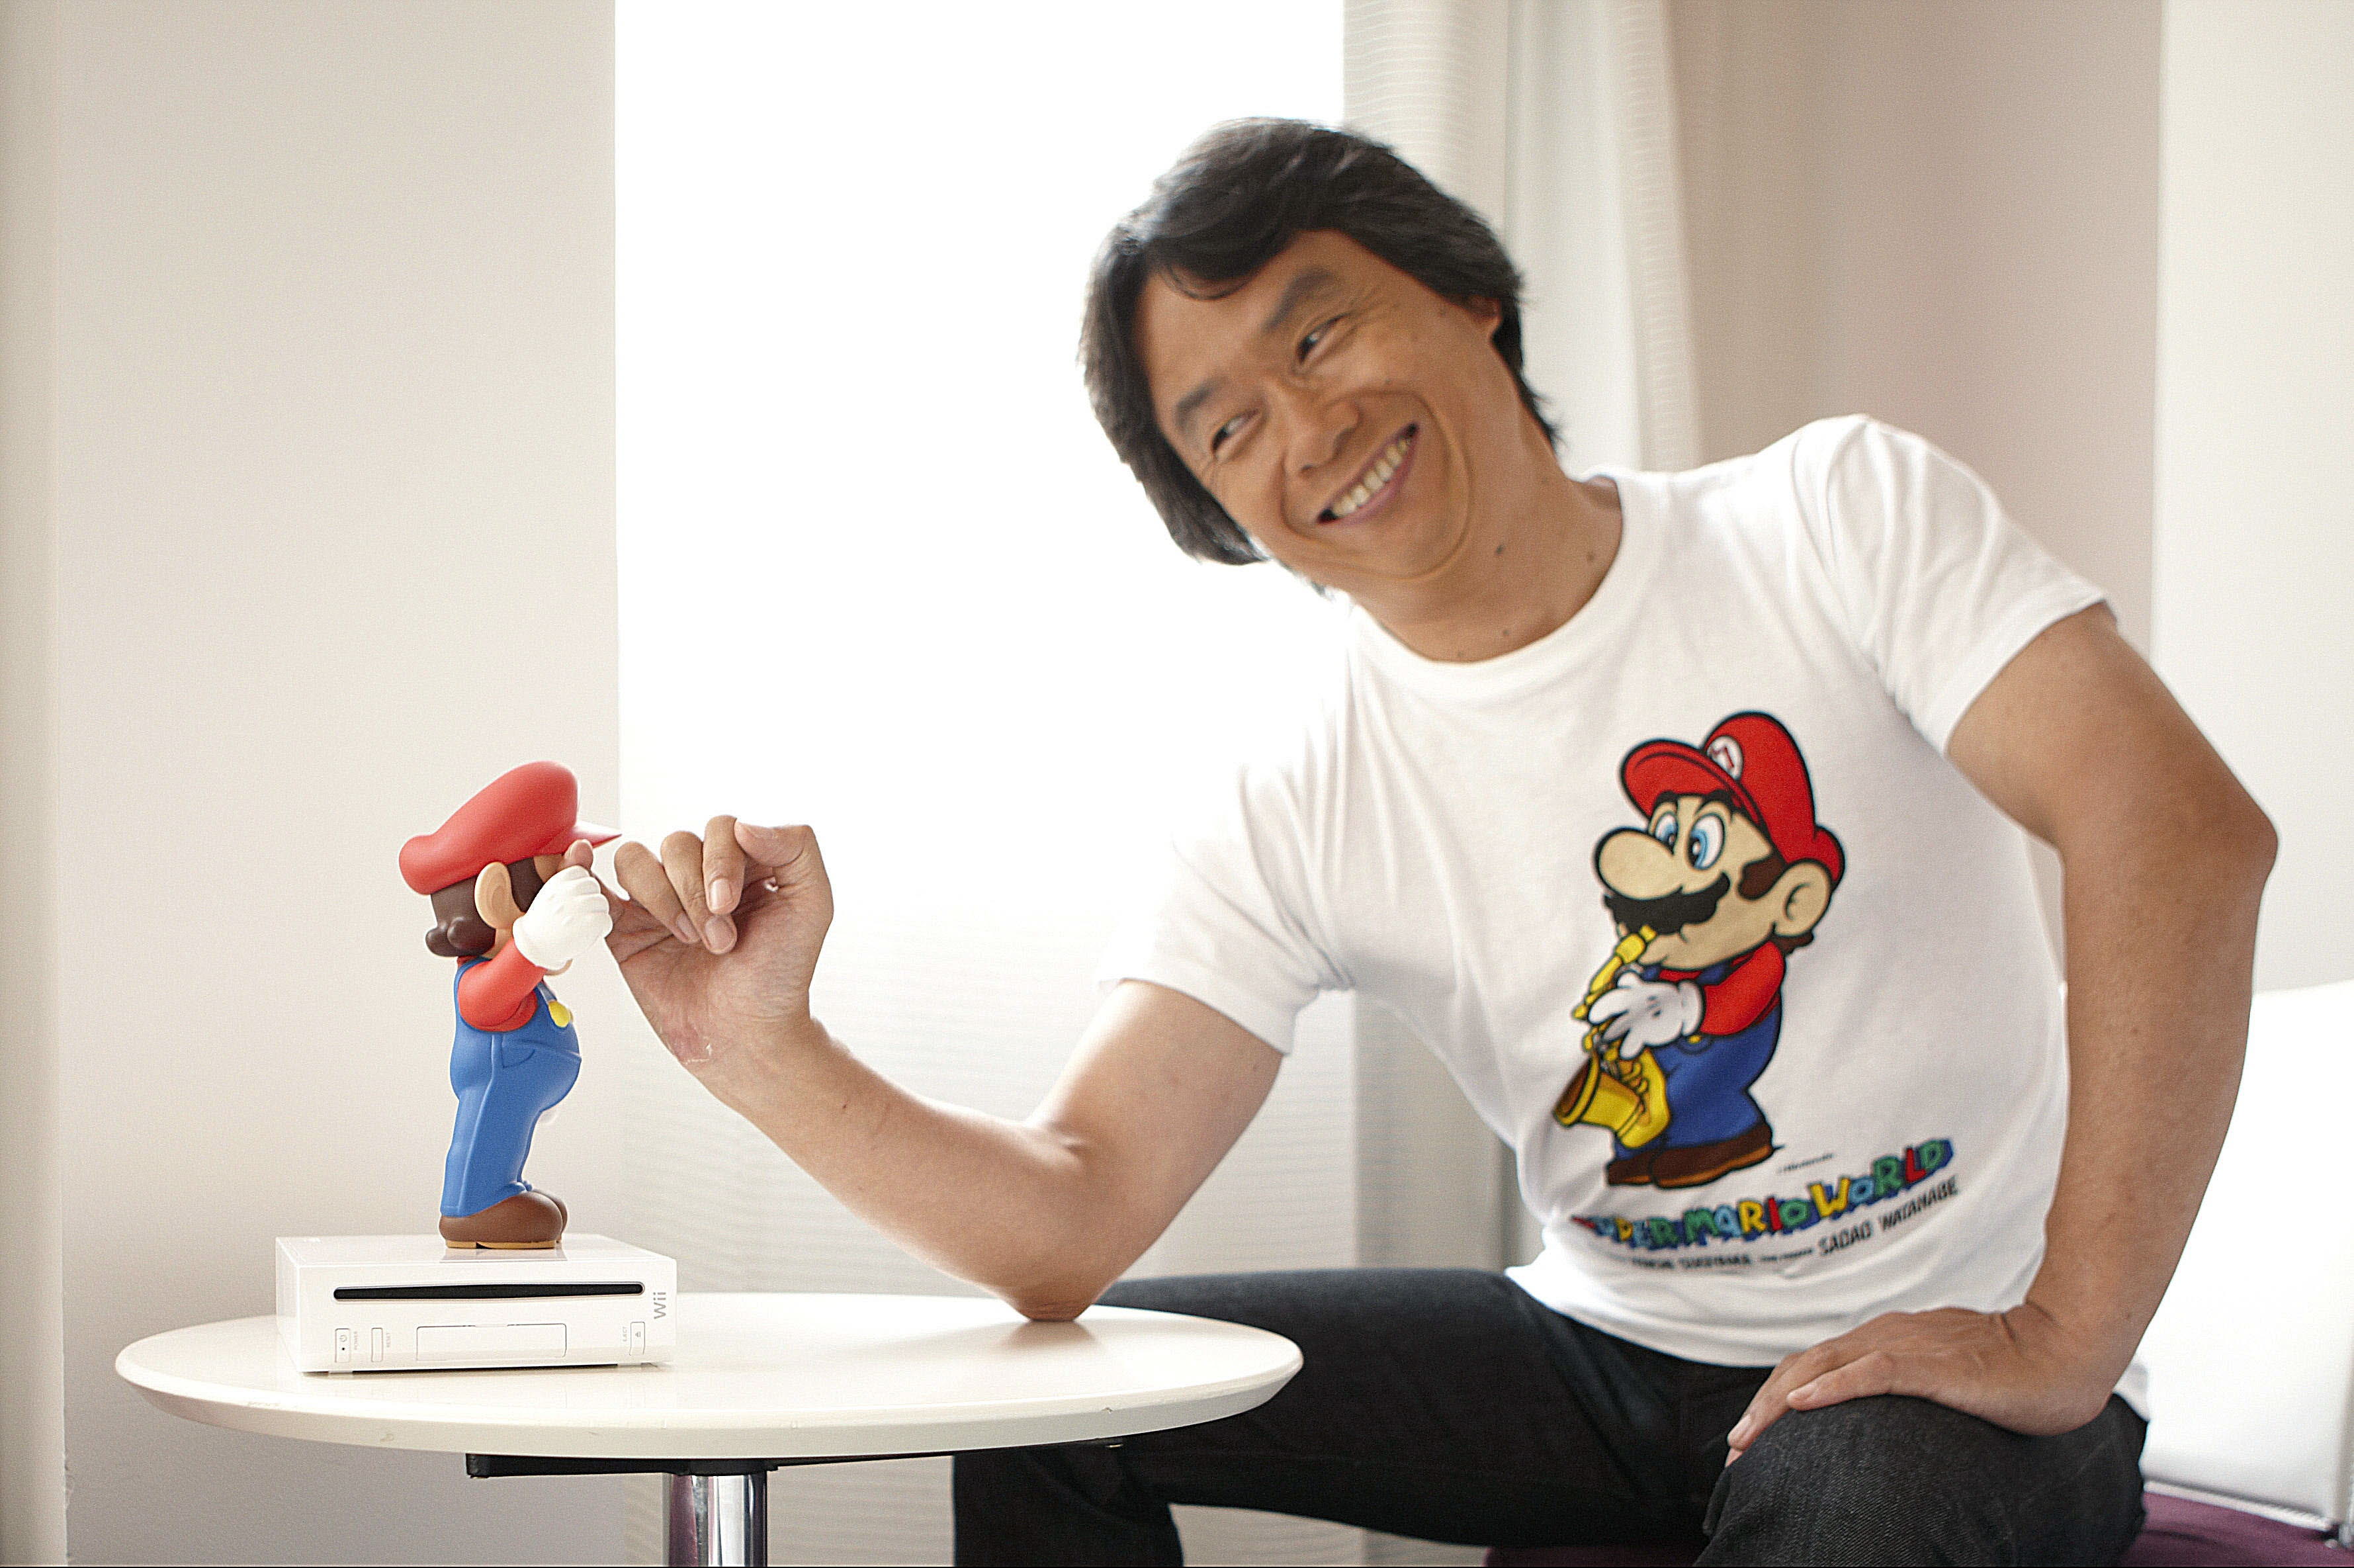 Los mejores fondos de pantalla de Shigeru Miyamoto para la pantalla del teléfono